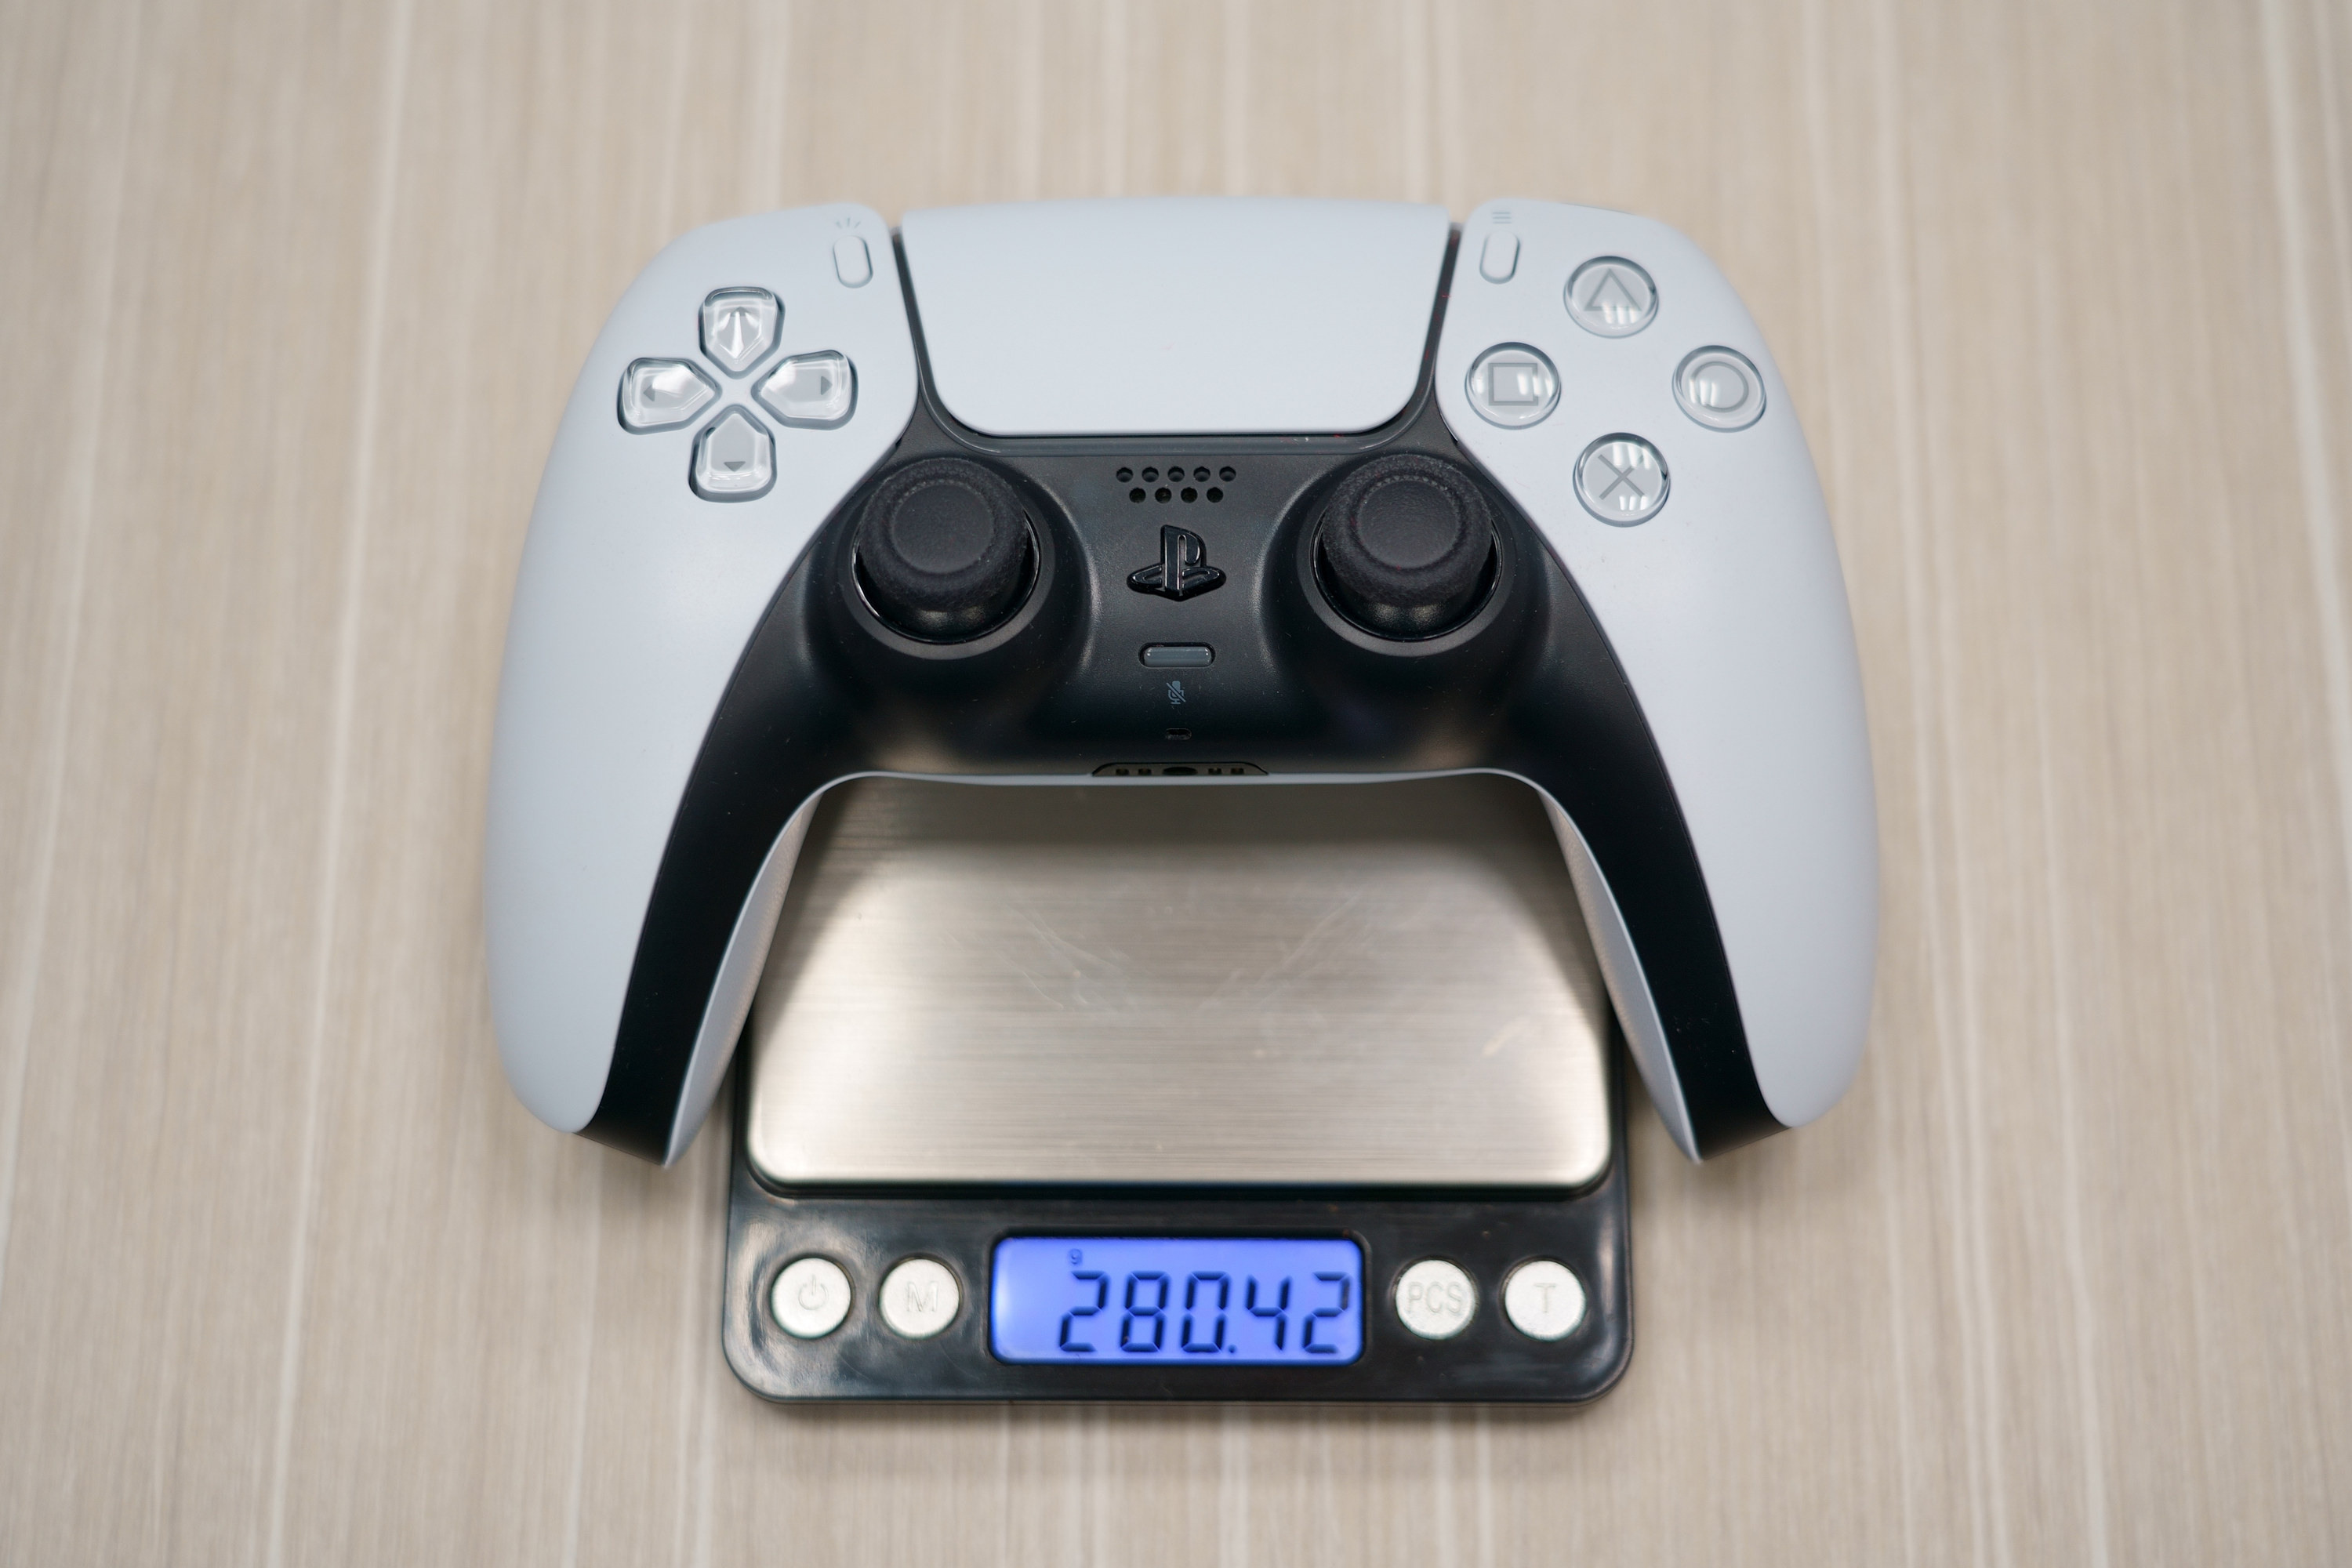 PS5 DualSense Edge 高效能控制器一手开箱 丰富自订功能满足各类型玩家需求插图14